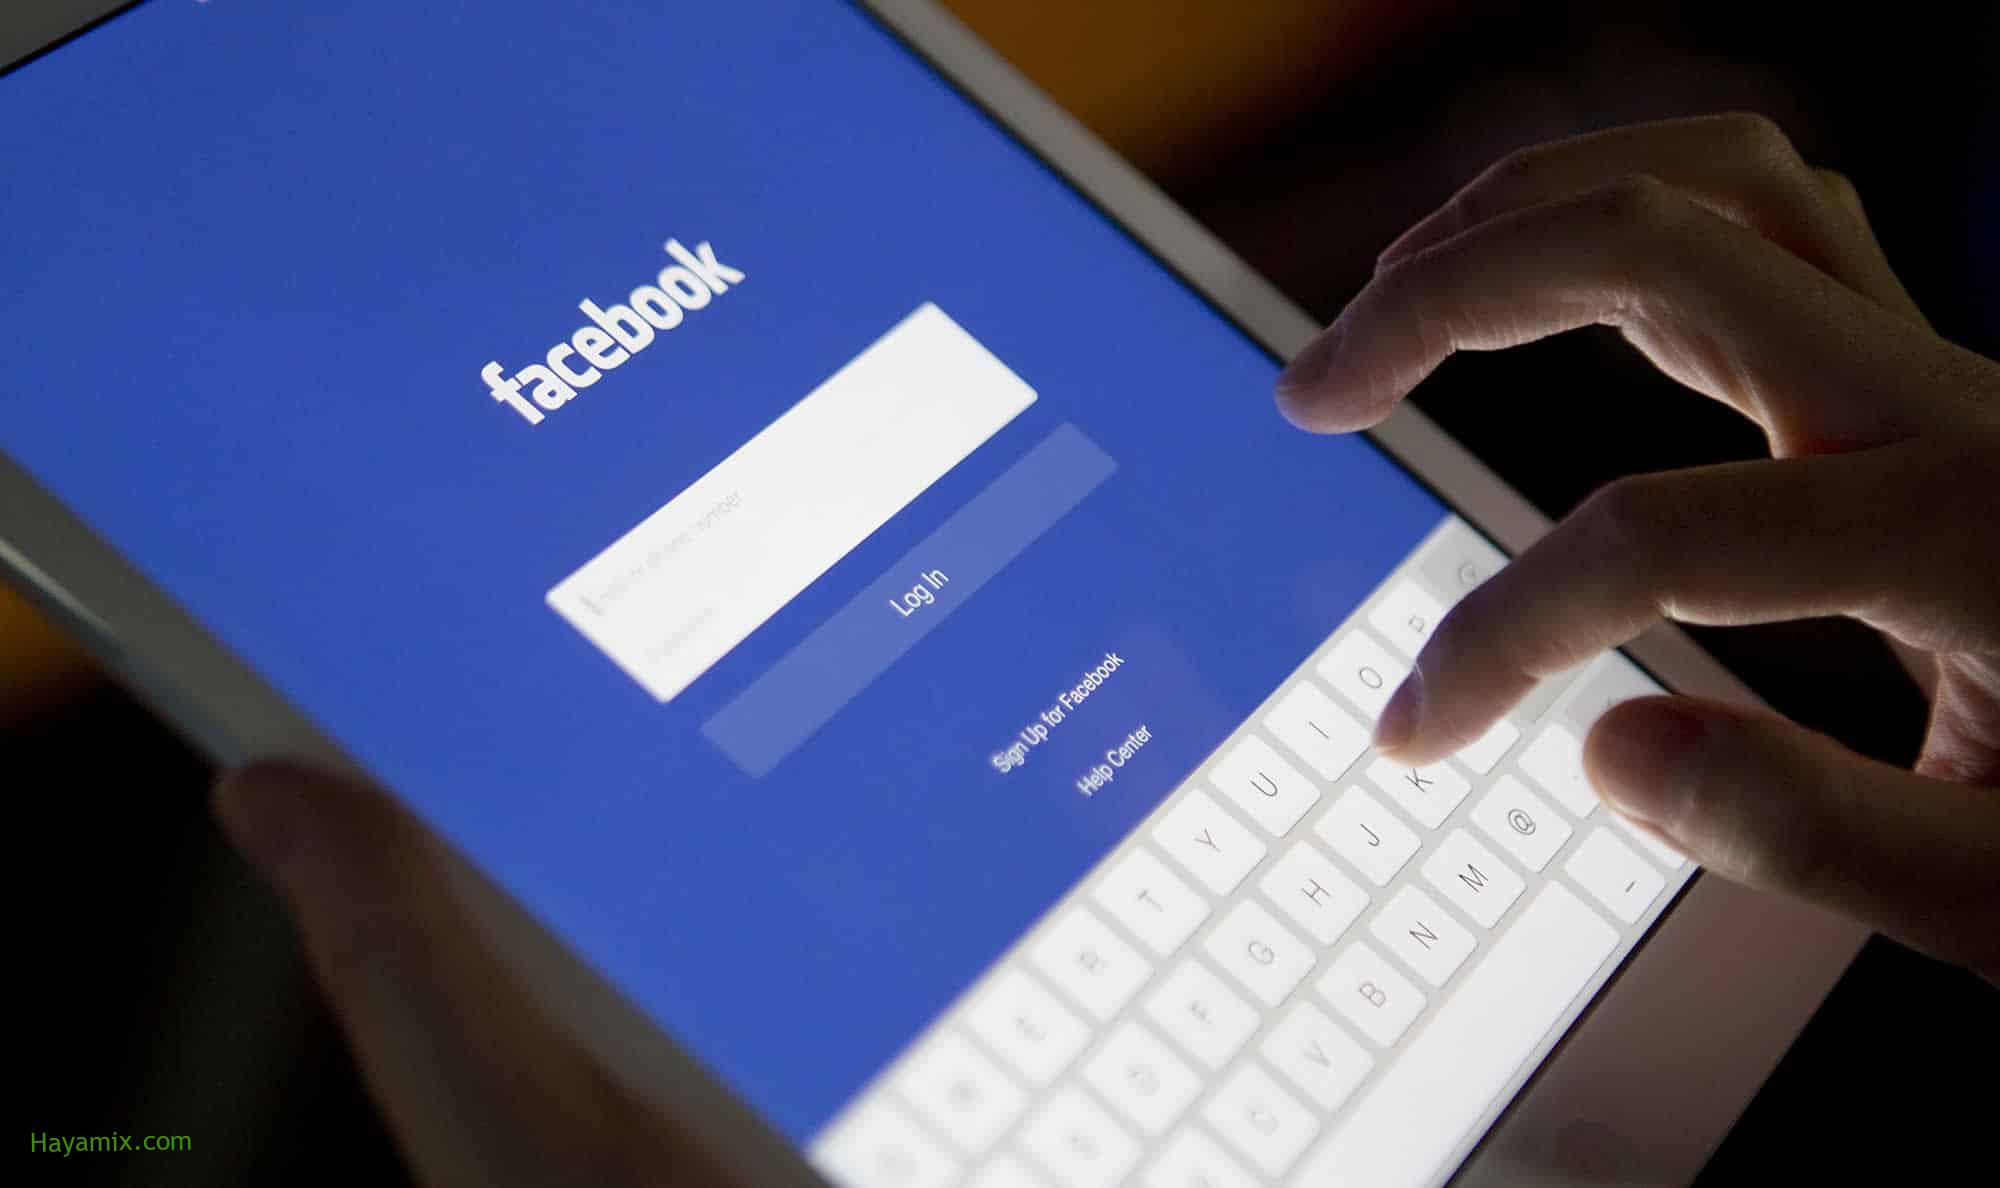 “فيسبوك” و”إنستغرام” يطرحان ميزة جديدة مفيدة للصحة النفسية للمستخدمين